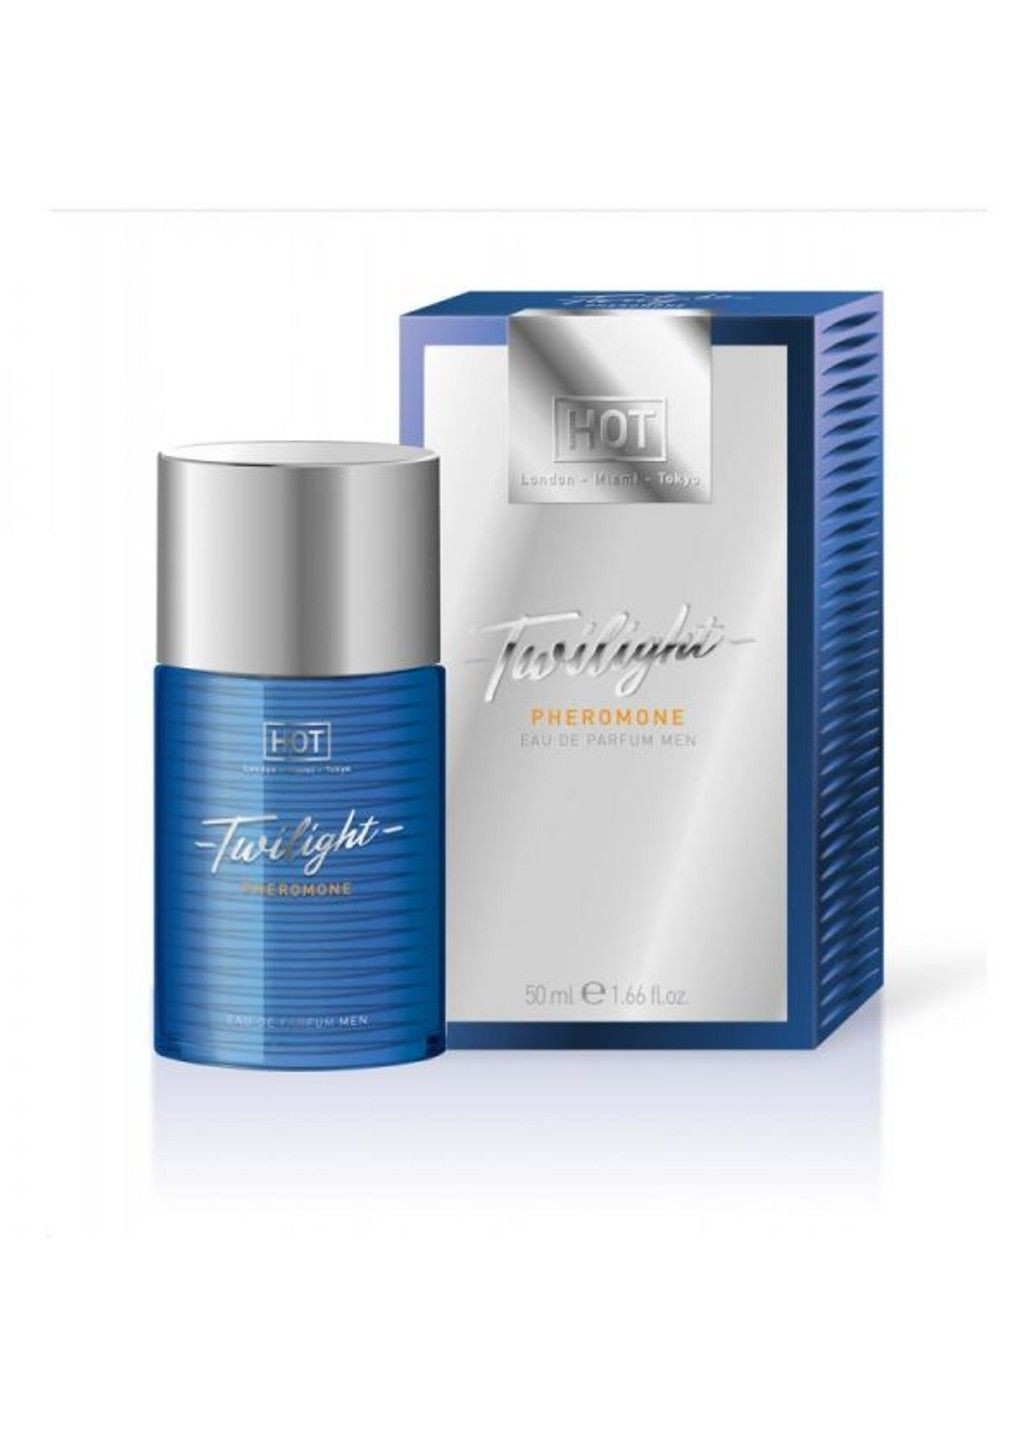 Духи з феромонами чоловічі Twilight Pheromone Parfum men 50 ml Hot (292015253)